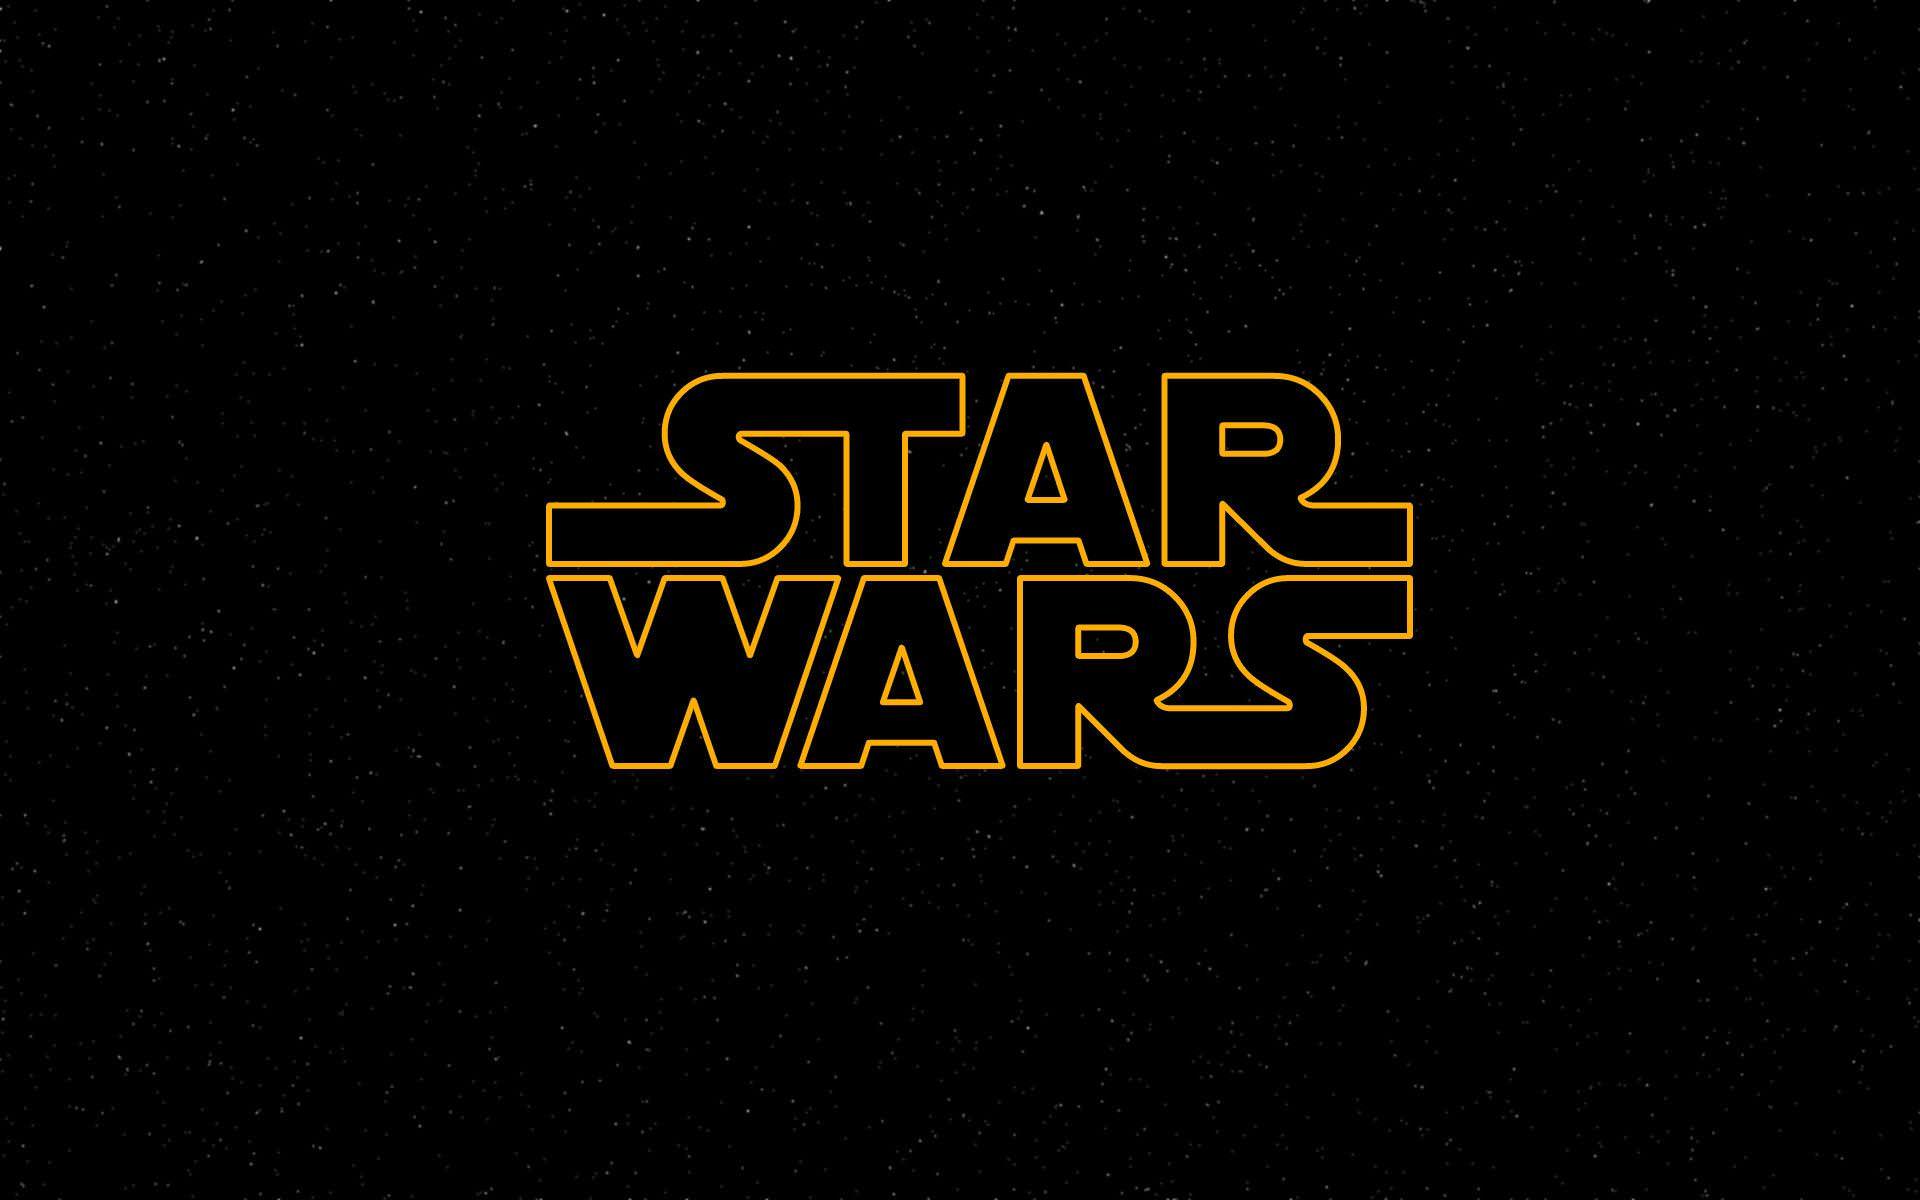 احتمال ساخت یک بازی Star Wars توسط کوانتیک دریم